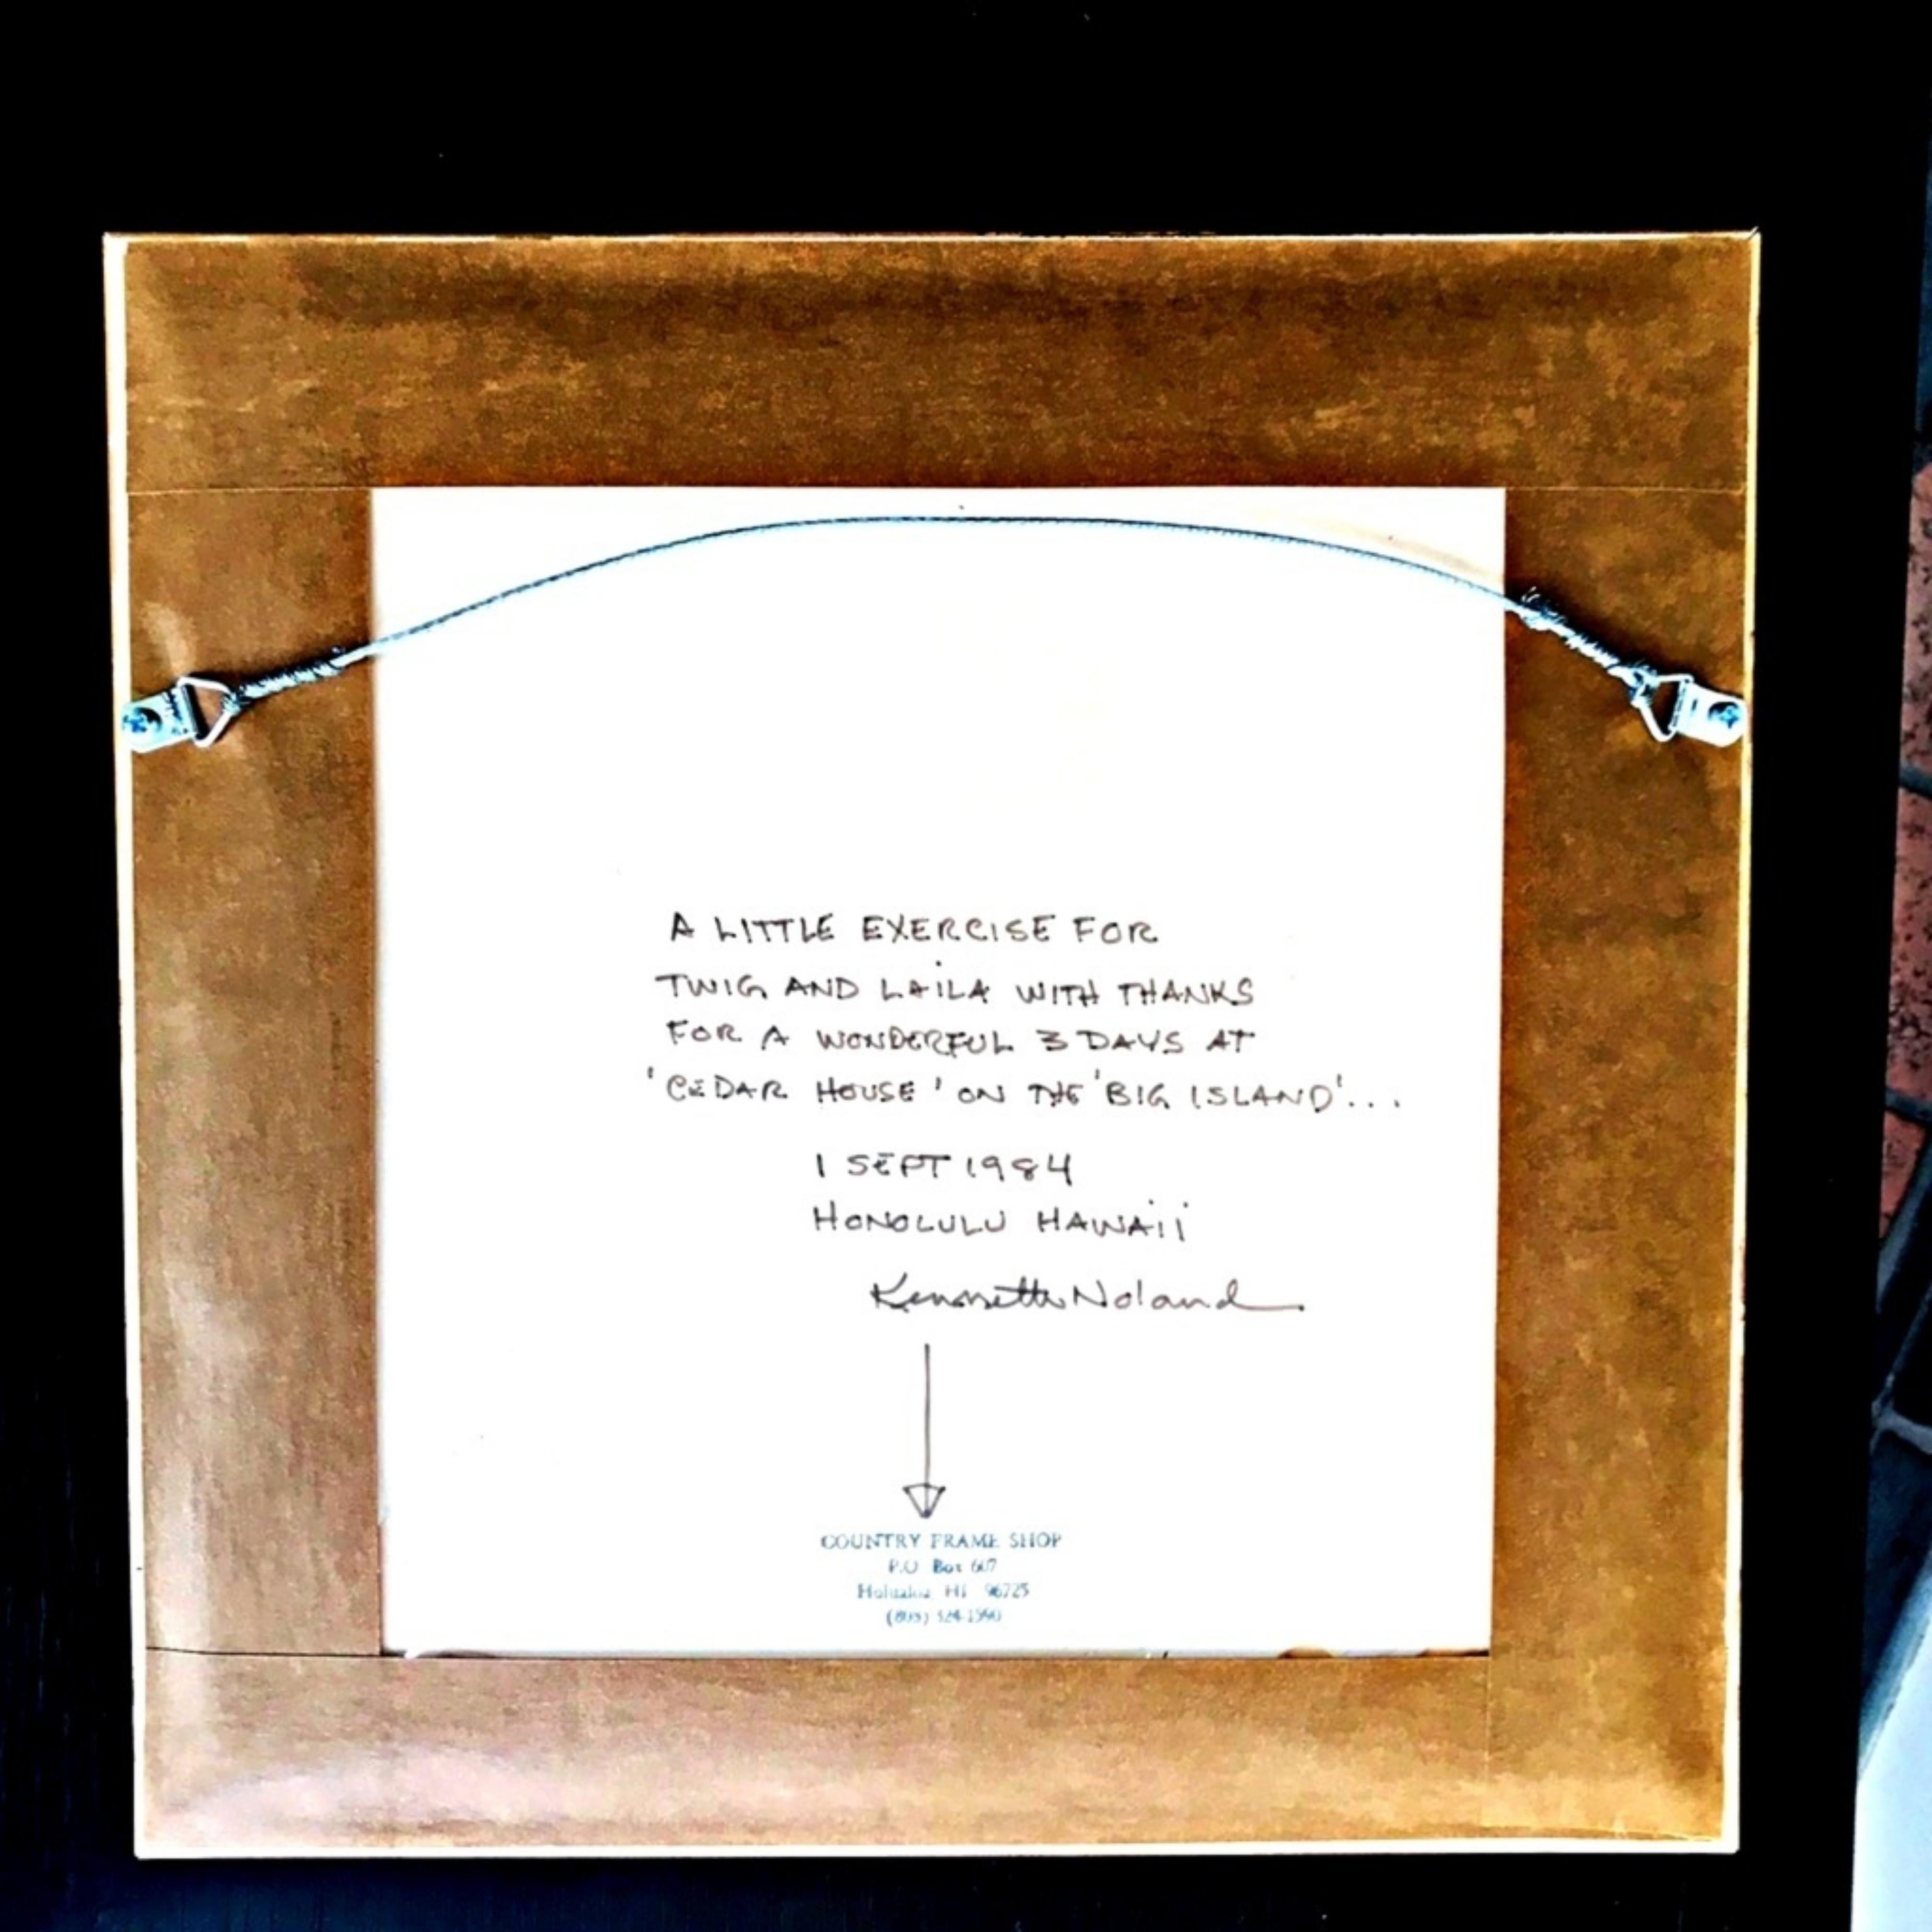 KENNETH NOLAND
Sans titre, pour les administrateurs du Musée d'art d'Honolulu, 1984
Collage mixte avec feuilles d'argent et de couleur sur carton.  
Signée au verso avec une inscription personnelle 